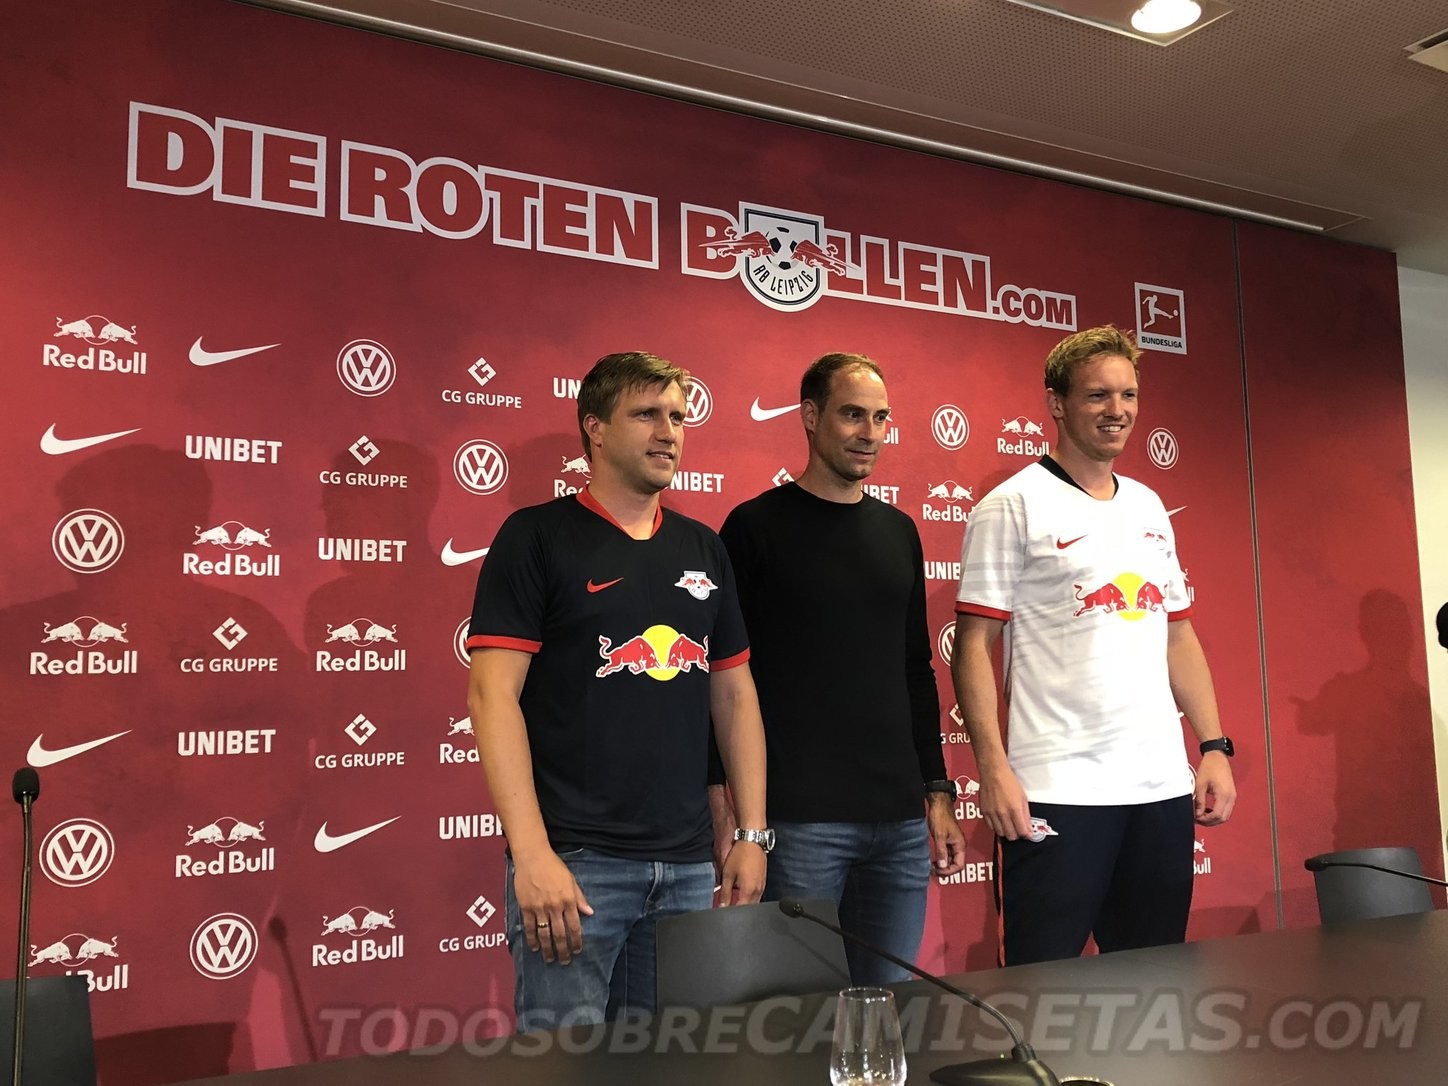 RB Leipzig 2019-20 Nike Kits